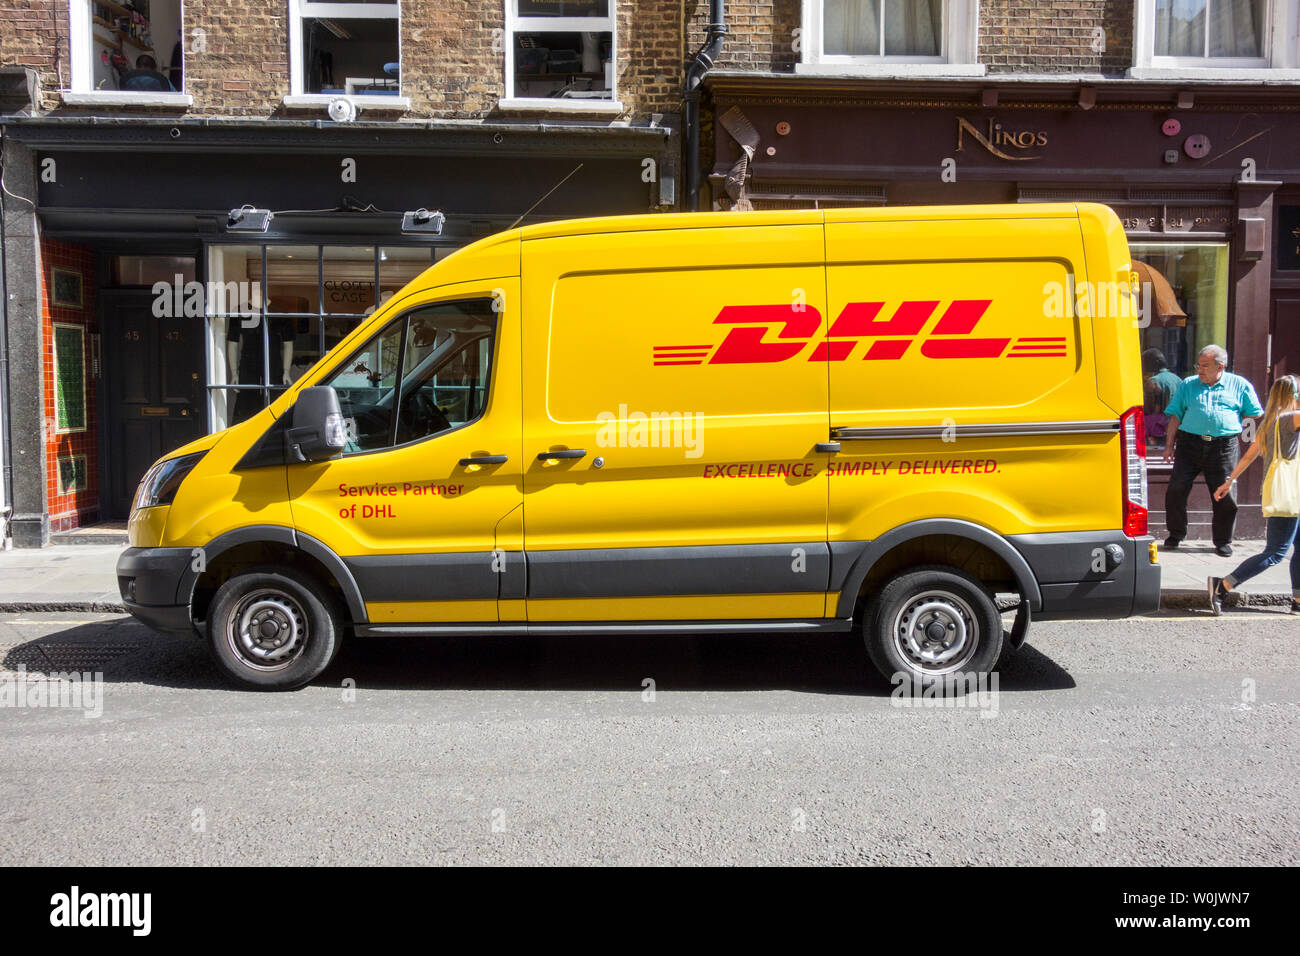 Livraison DHL un van stationné dans une rue de Soho, Londres, UK Banque D'Images